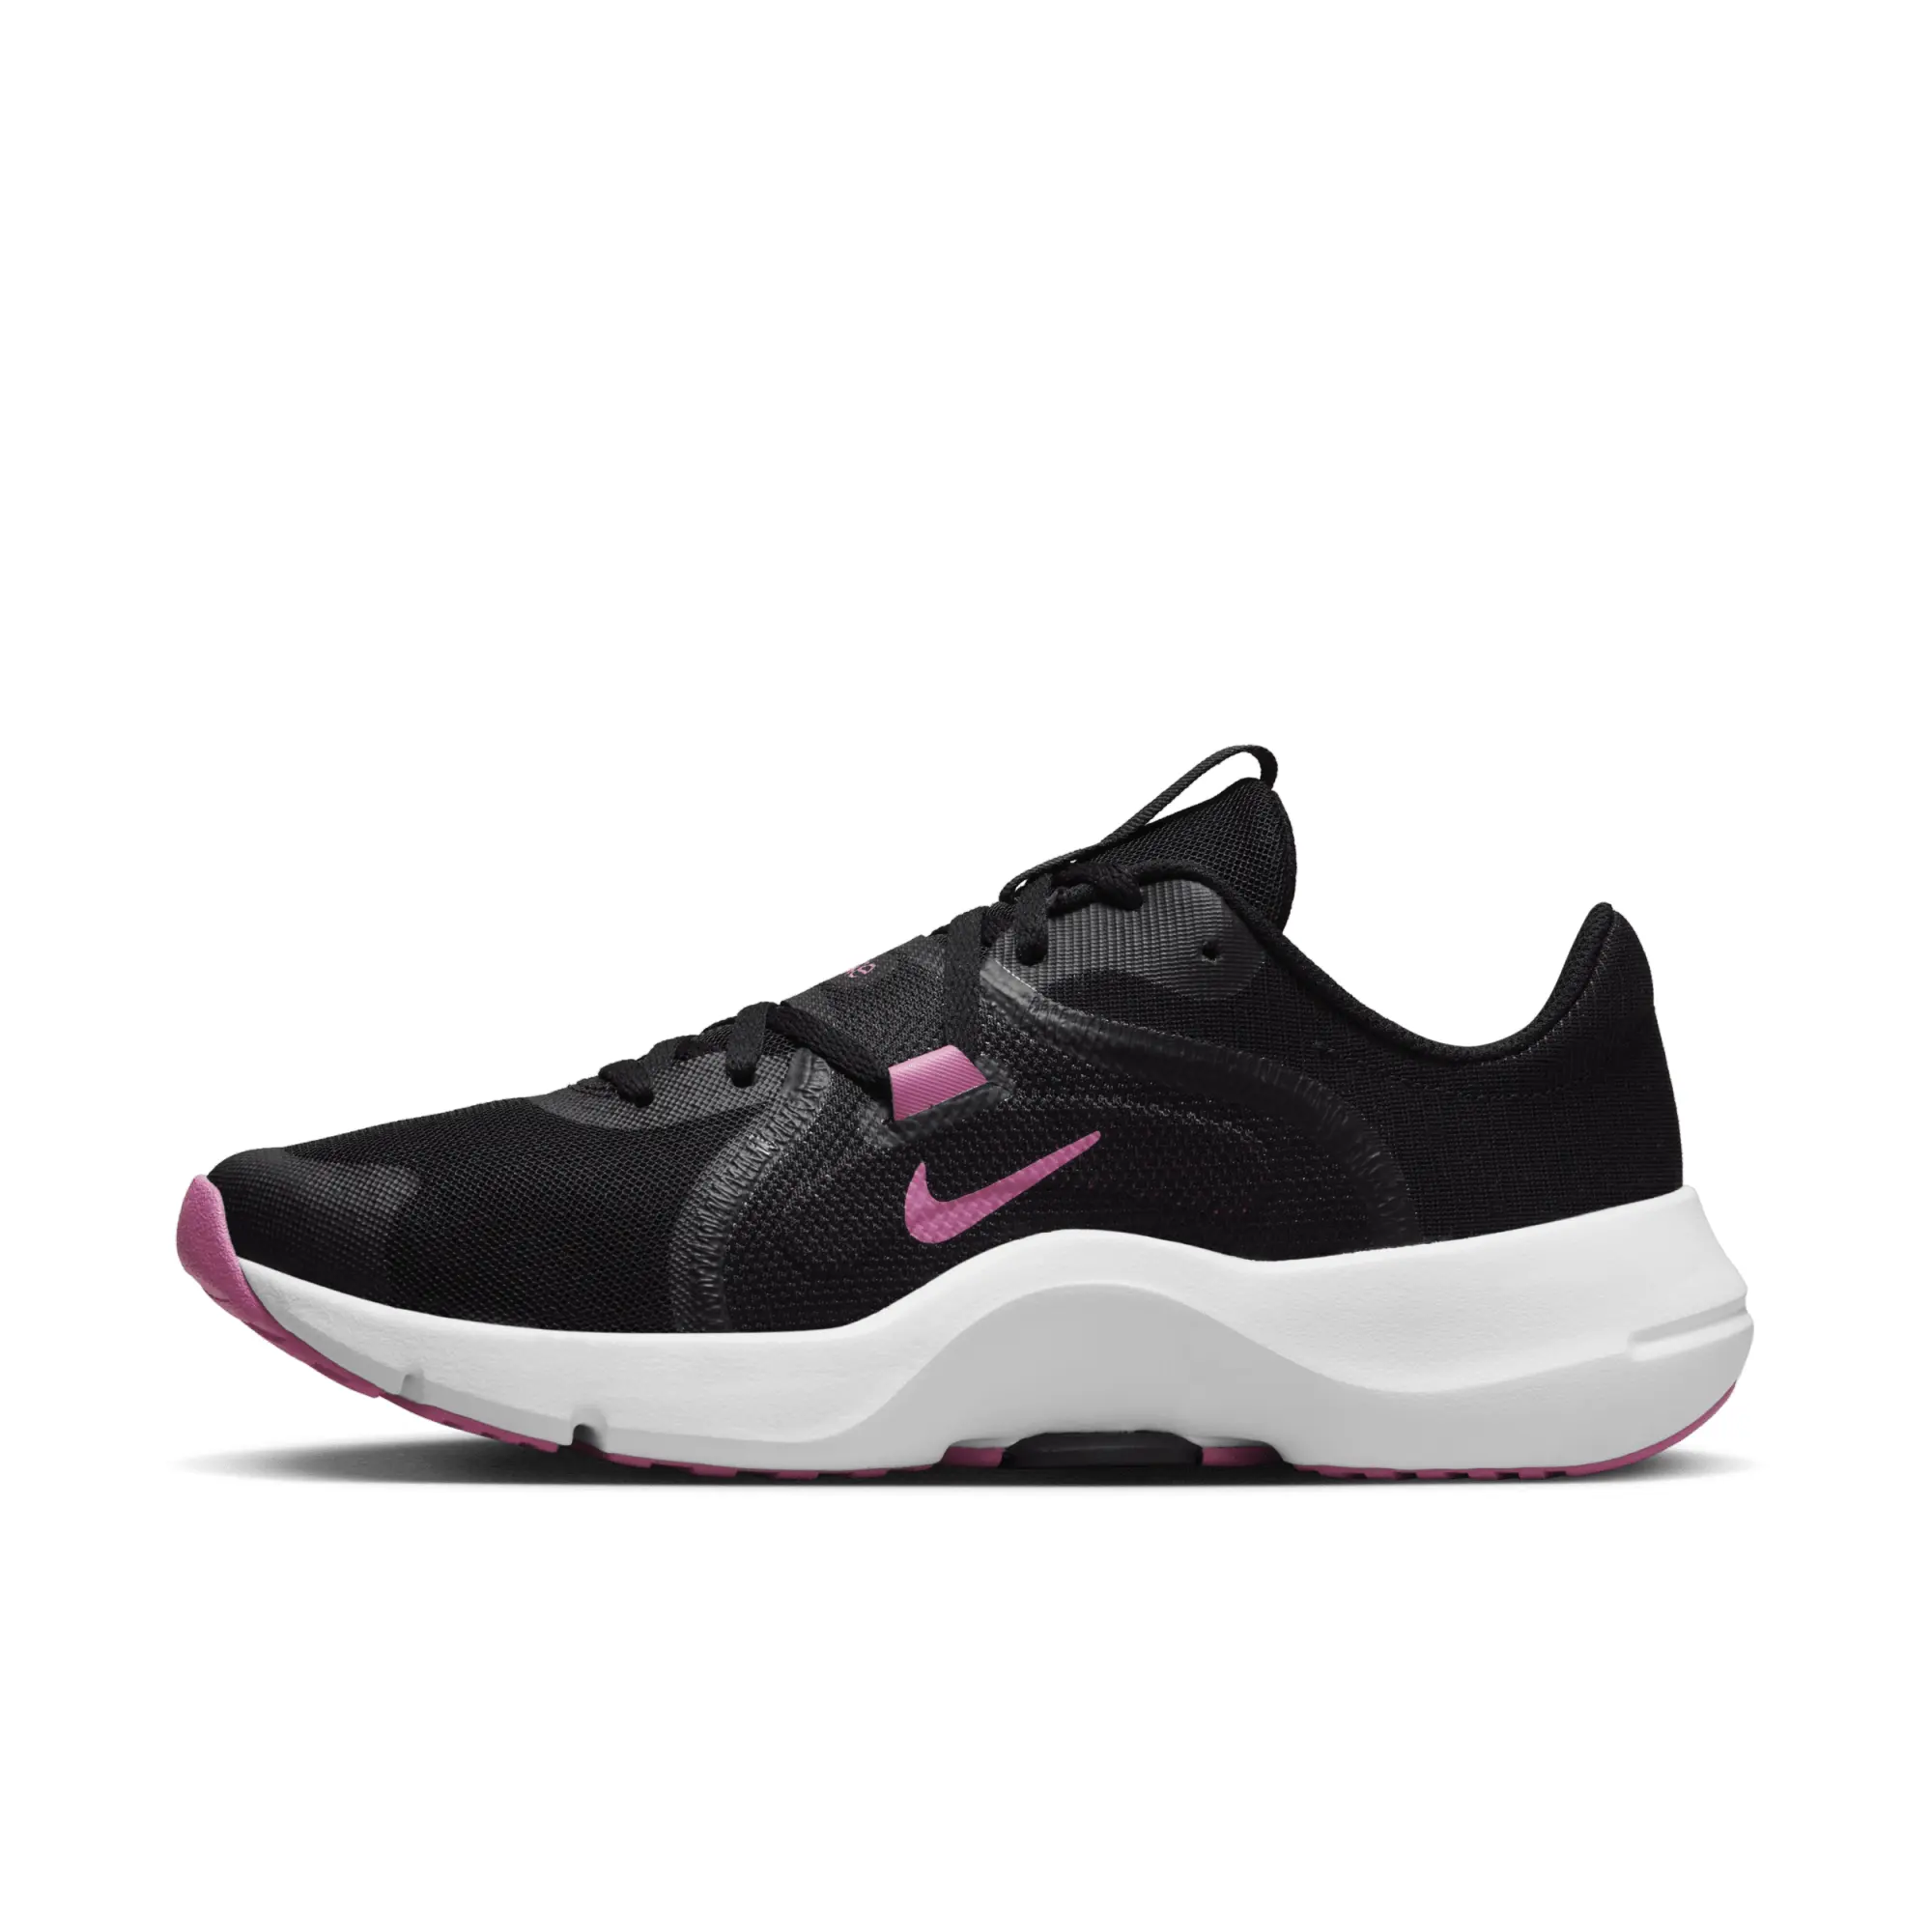 Nike In-Season TR 13 Trainers - Black/Pink, Black/Pink